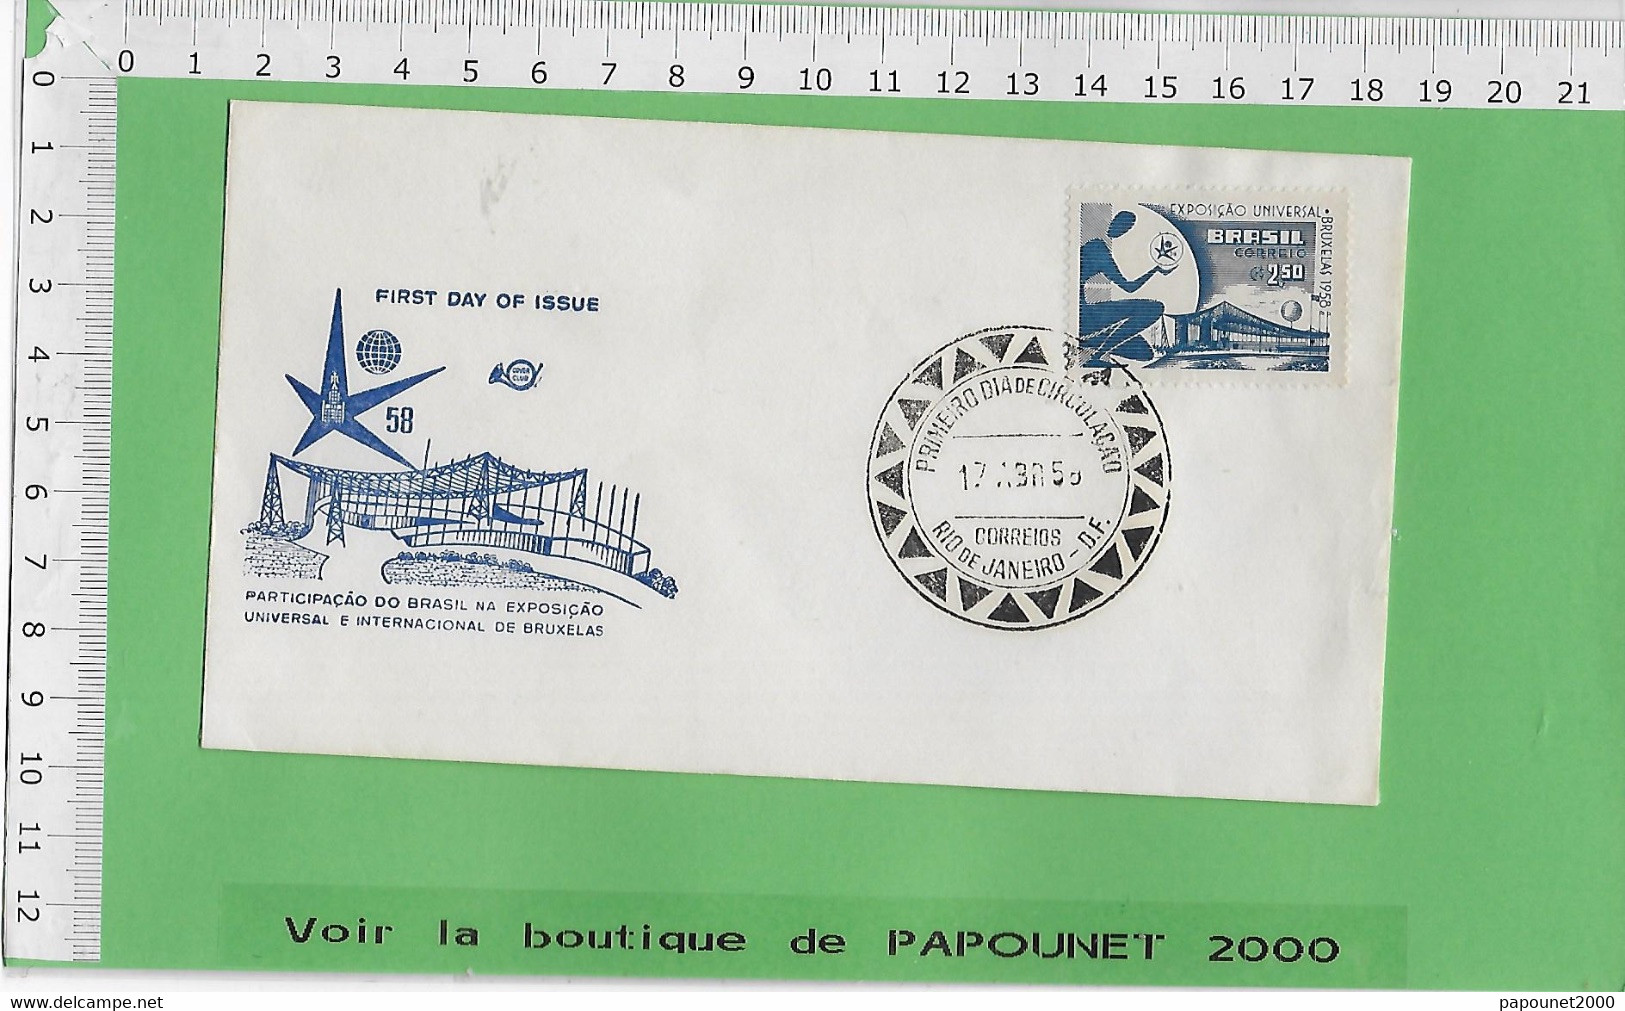 02581 - E BE04 1000-EXPO 58 : Timbre*Enveloppe /  PAVILLON DU BRESIL - 1958 – Bruxelles (Belgique)